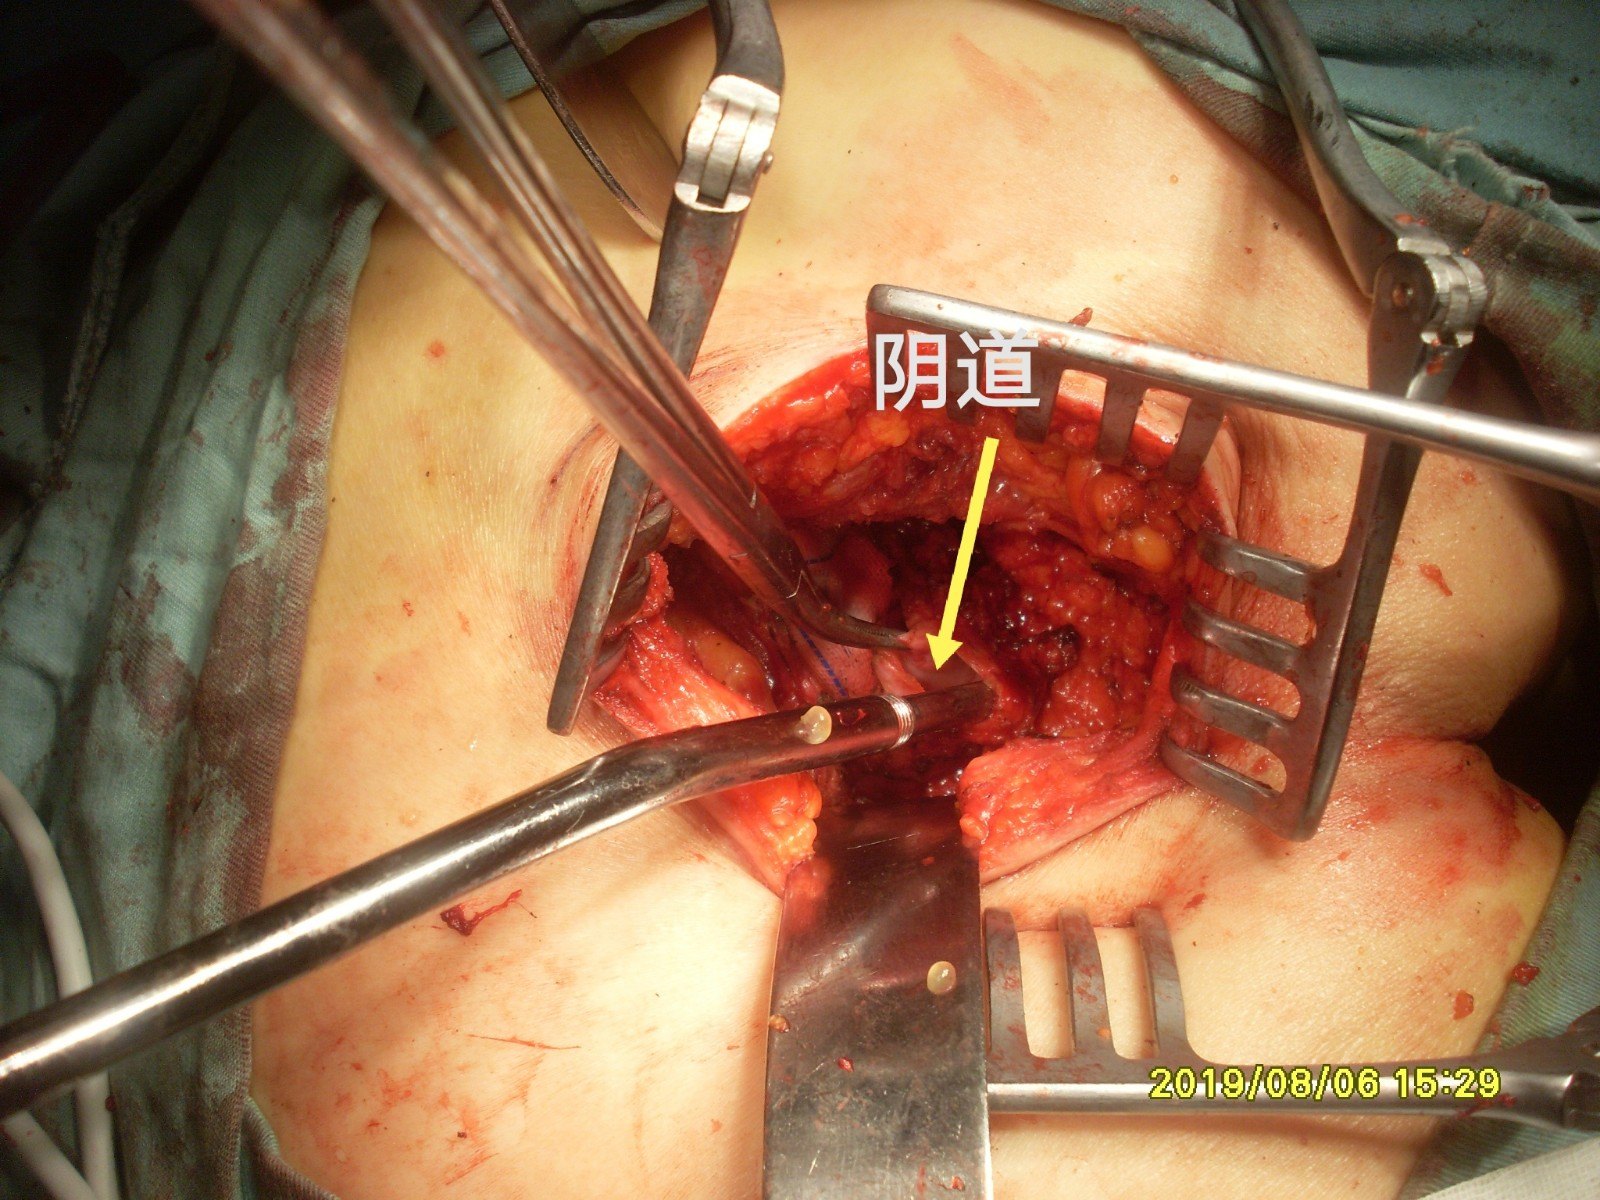 卵巢及盆腔肿物,臀部手术必须是切除尾骨前直肠右侧囊肿,为明确诊断